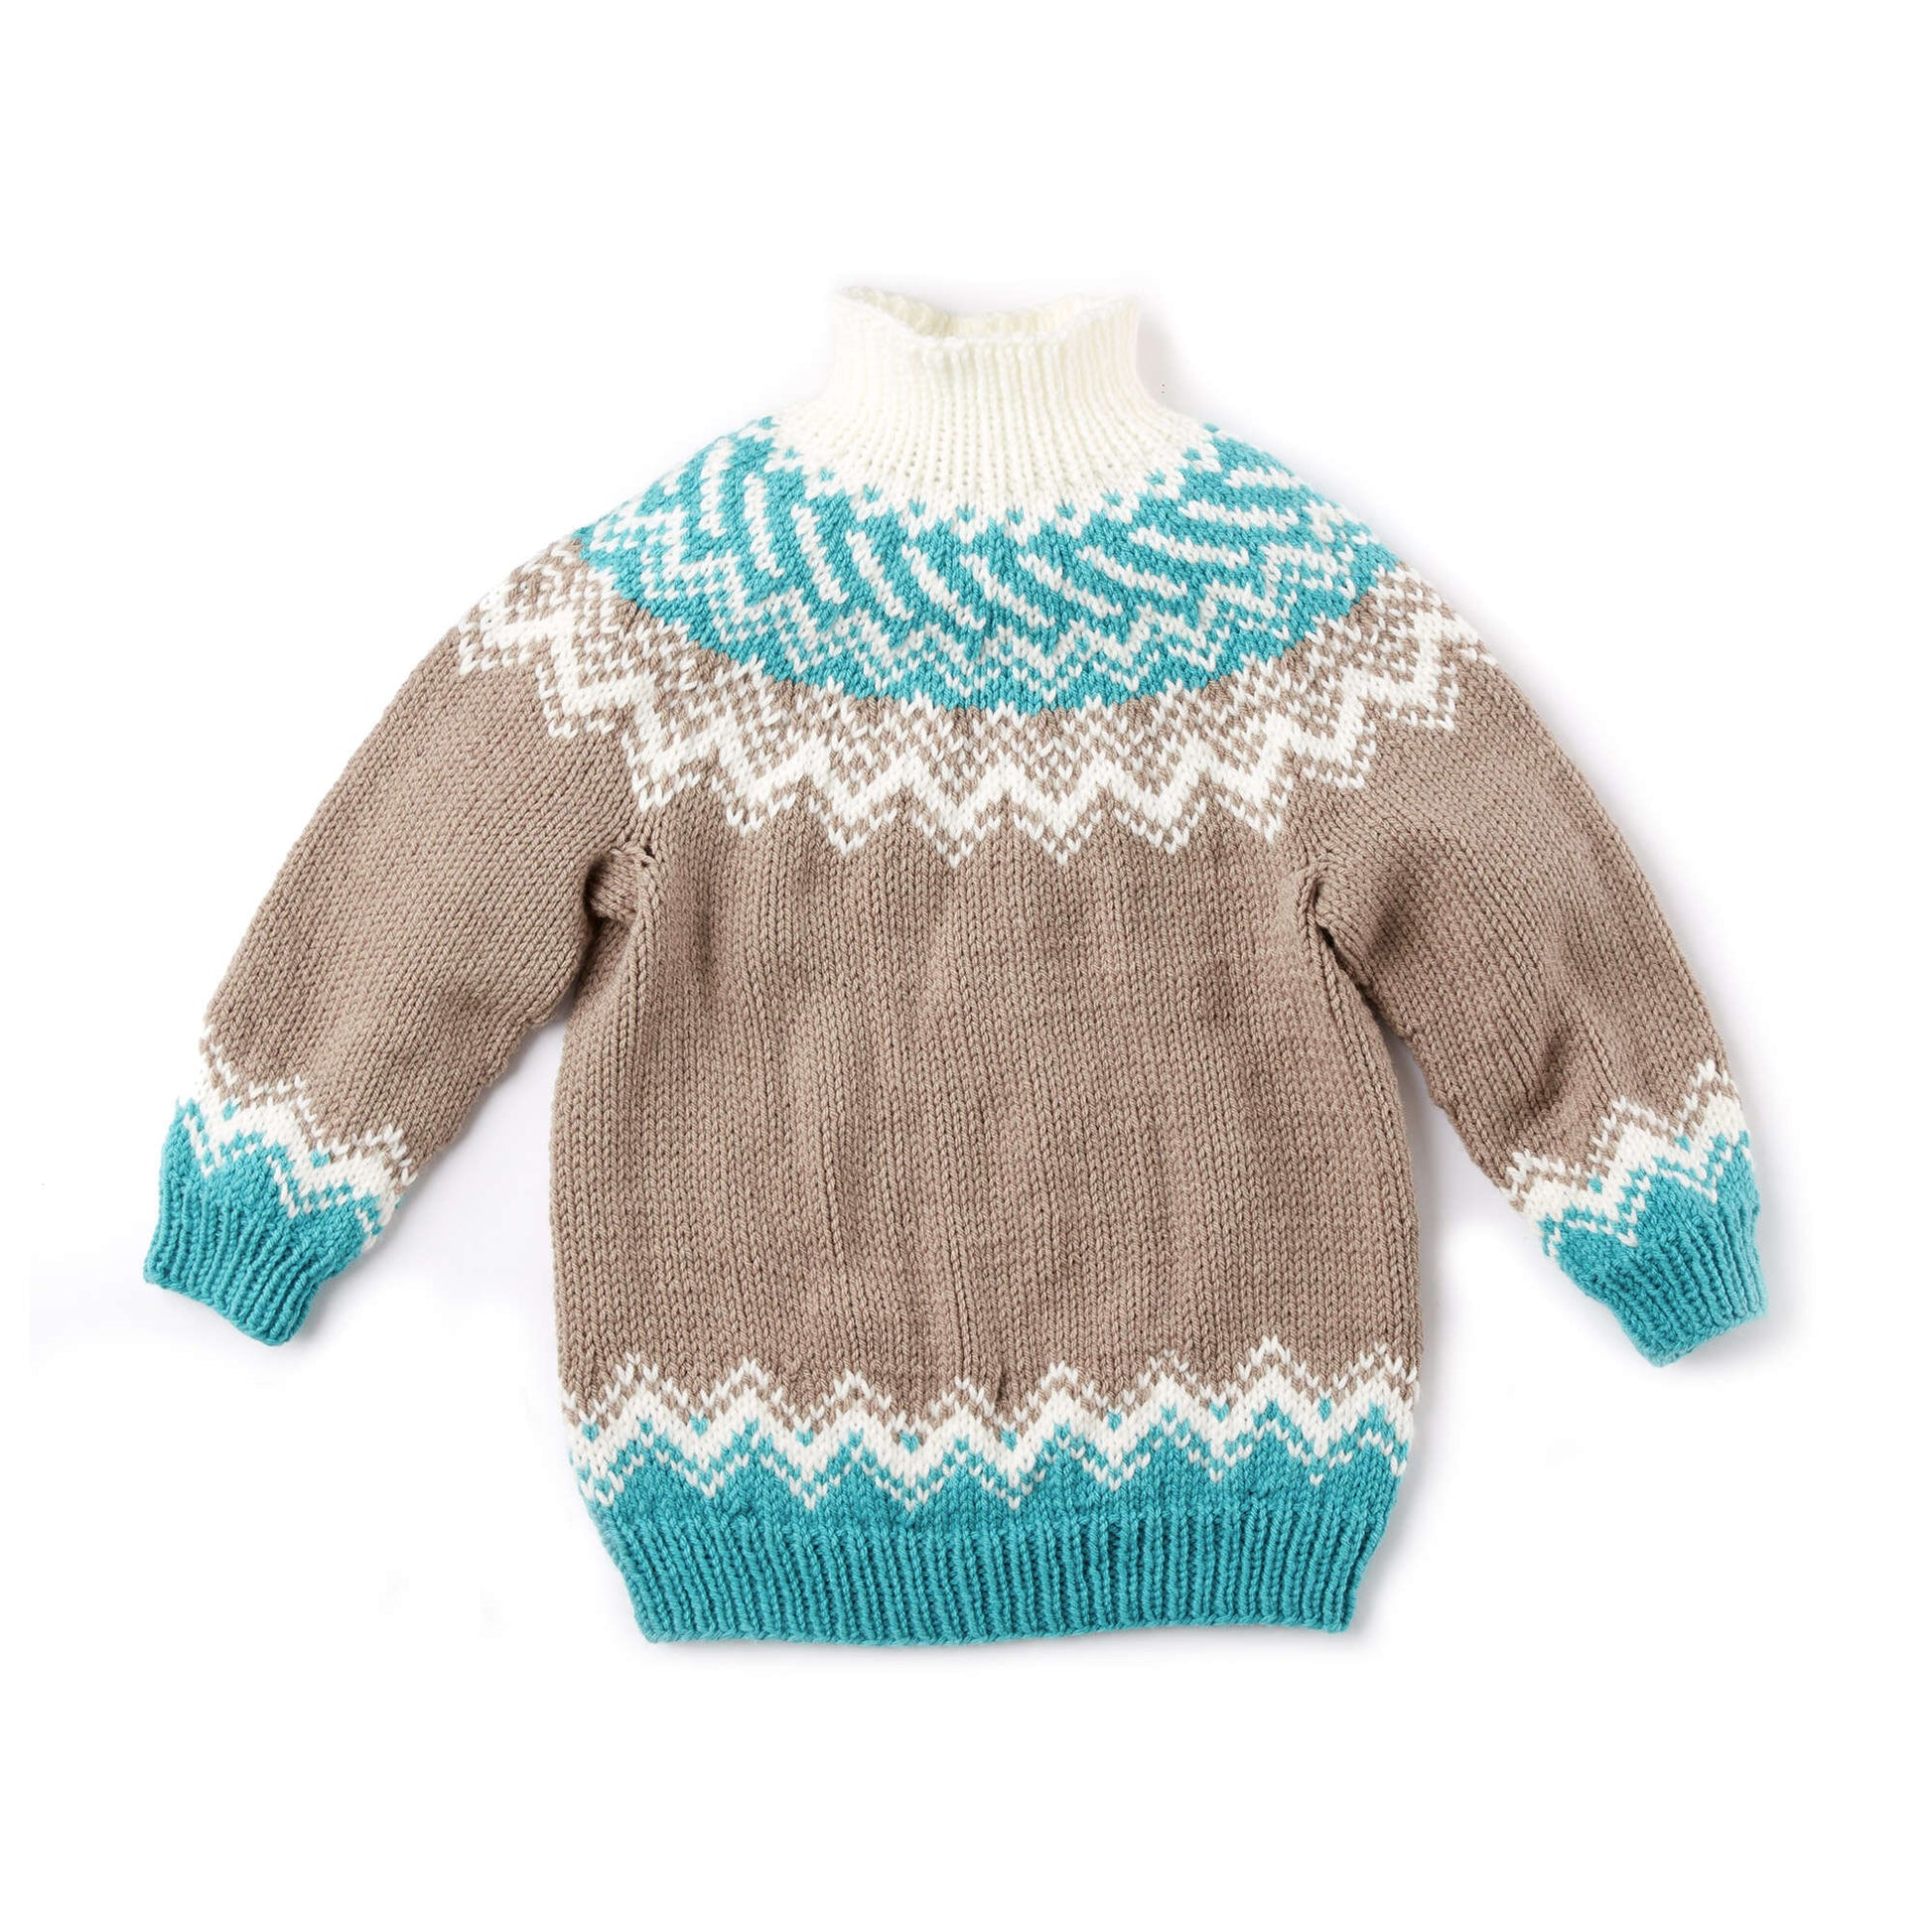 Bernat Knit Fair Isle Yoke Sweater Pattern